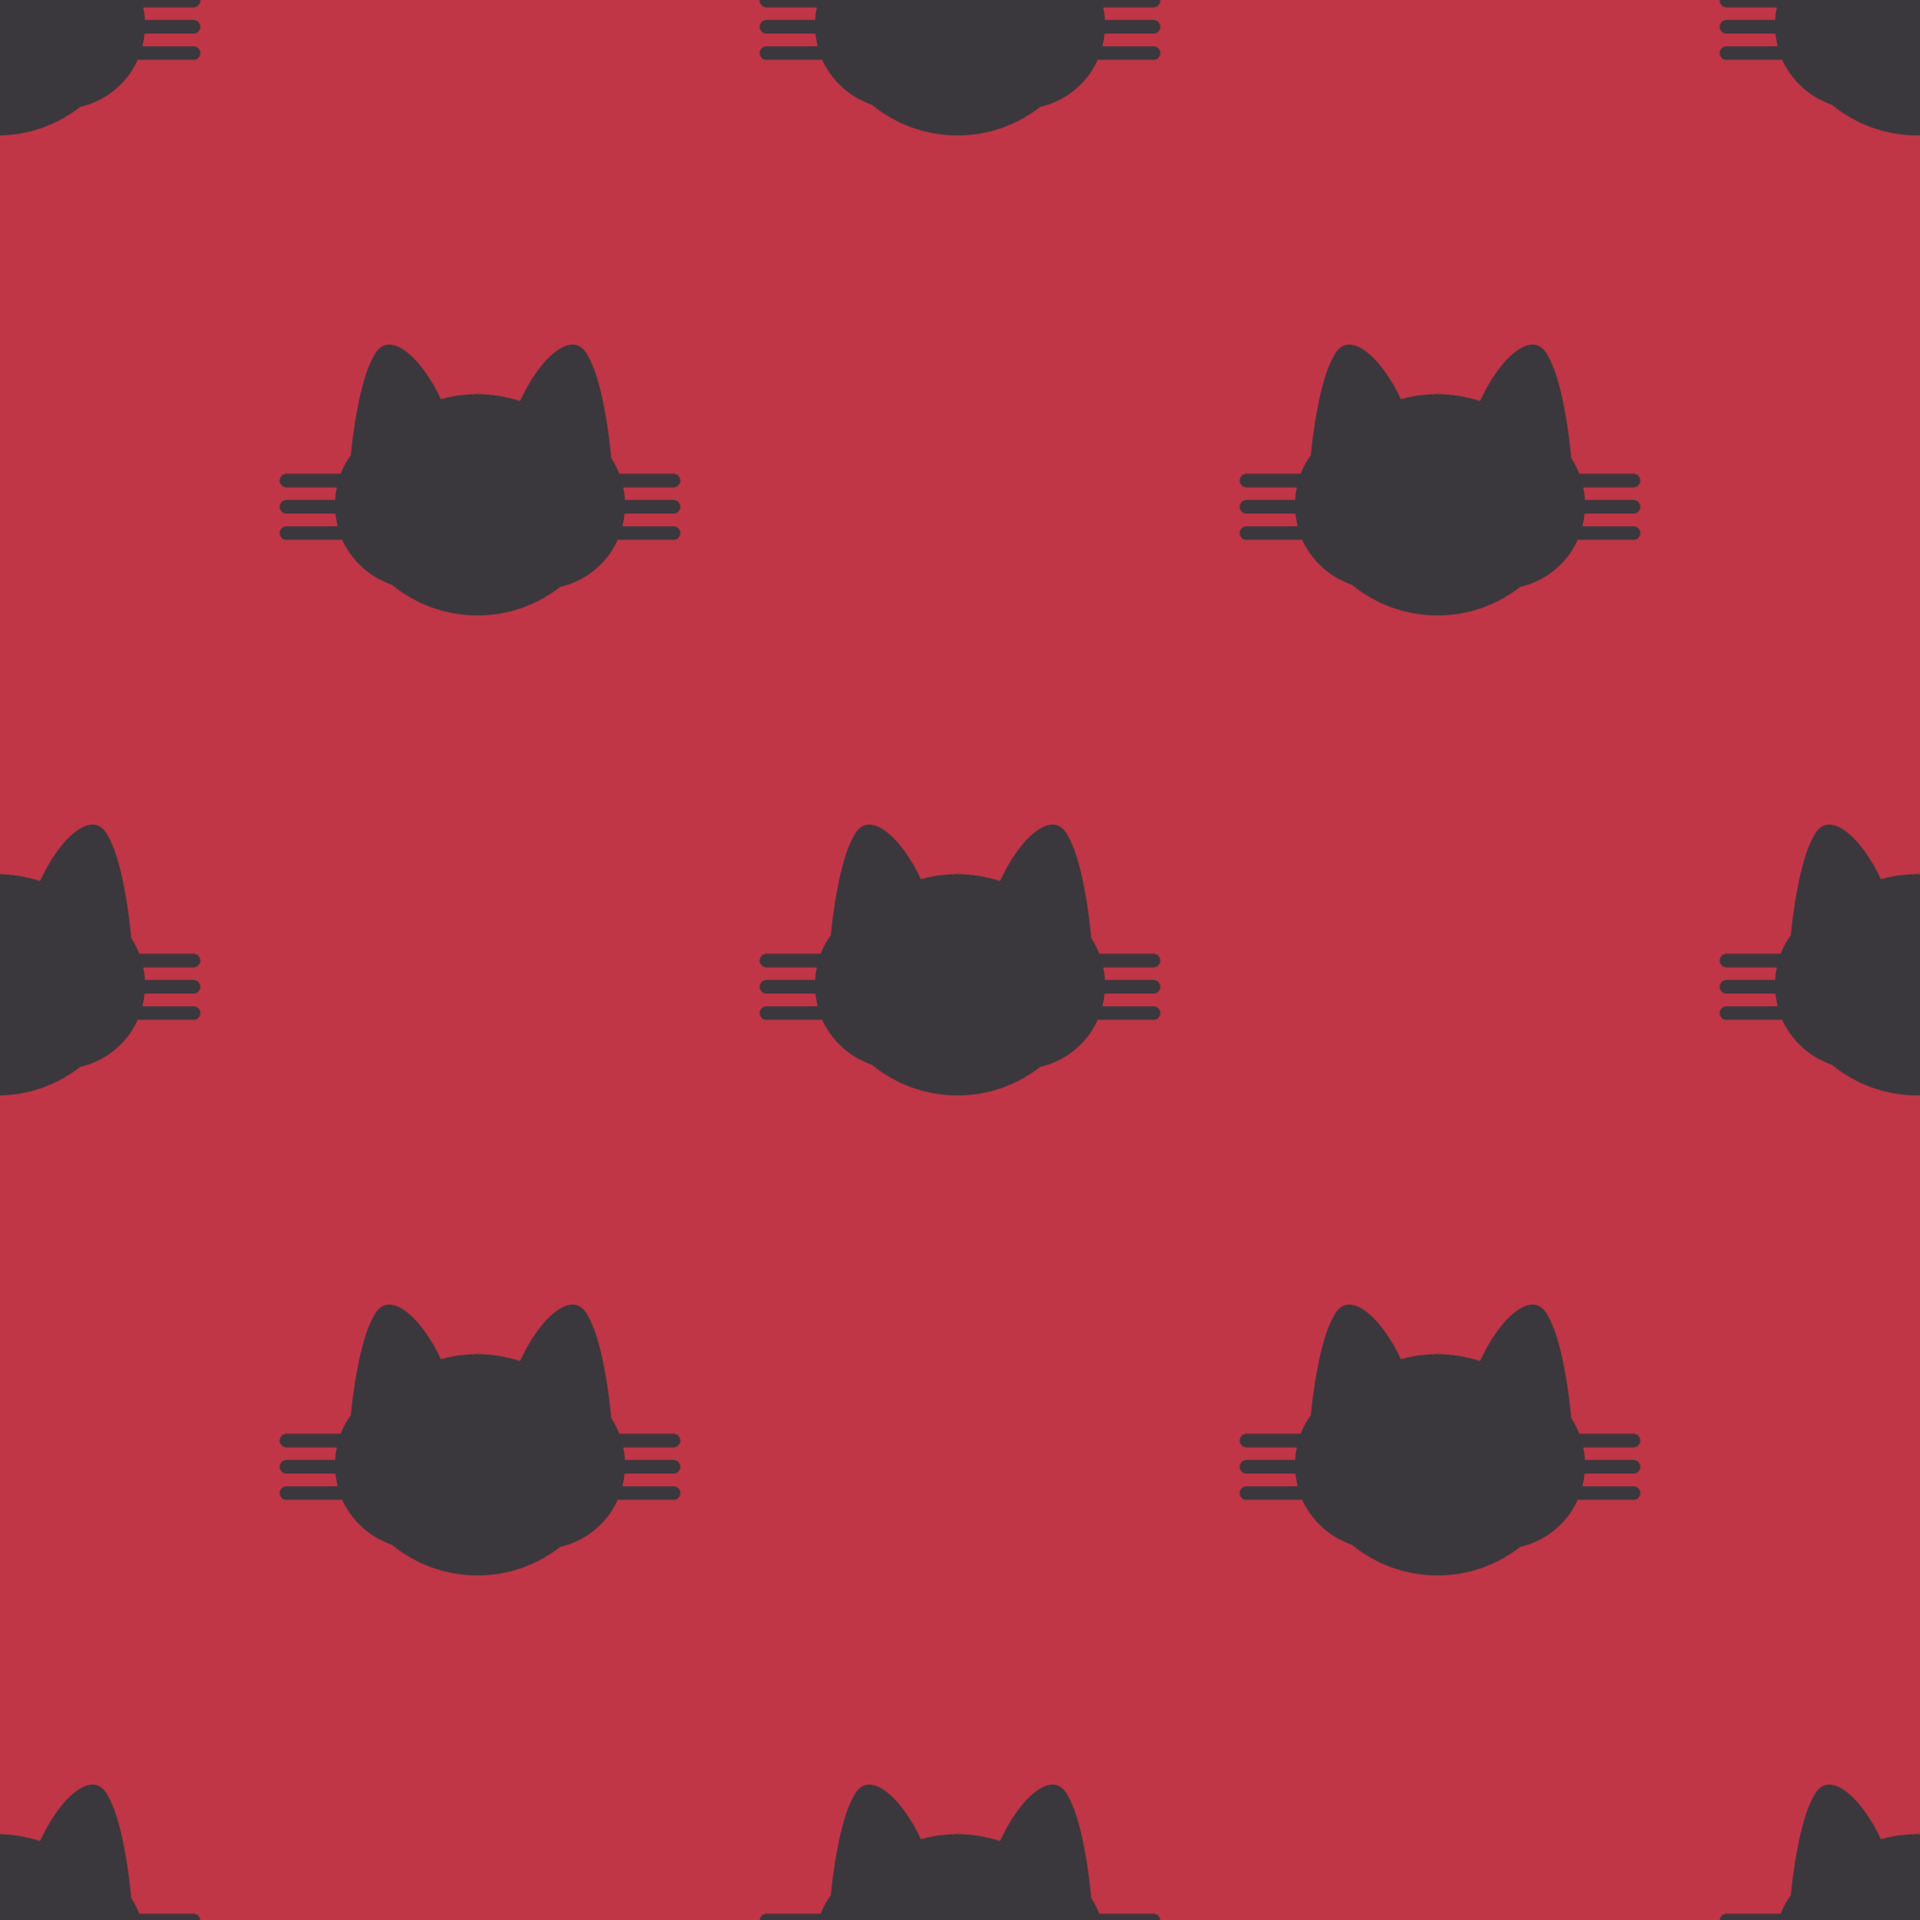 Cat pattern: Chắc hẳn bạn sẽ phải yêu thích bức ảnh này nếu bạn là một người yêu mèo. Hãy xem những hình ảnh mèo với họa tiết đẹp mắt và tìm hiểu thêm về sở thích của bạn trong sự đa dạng của loài mèo.